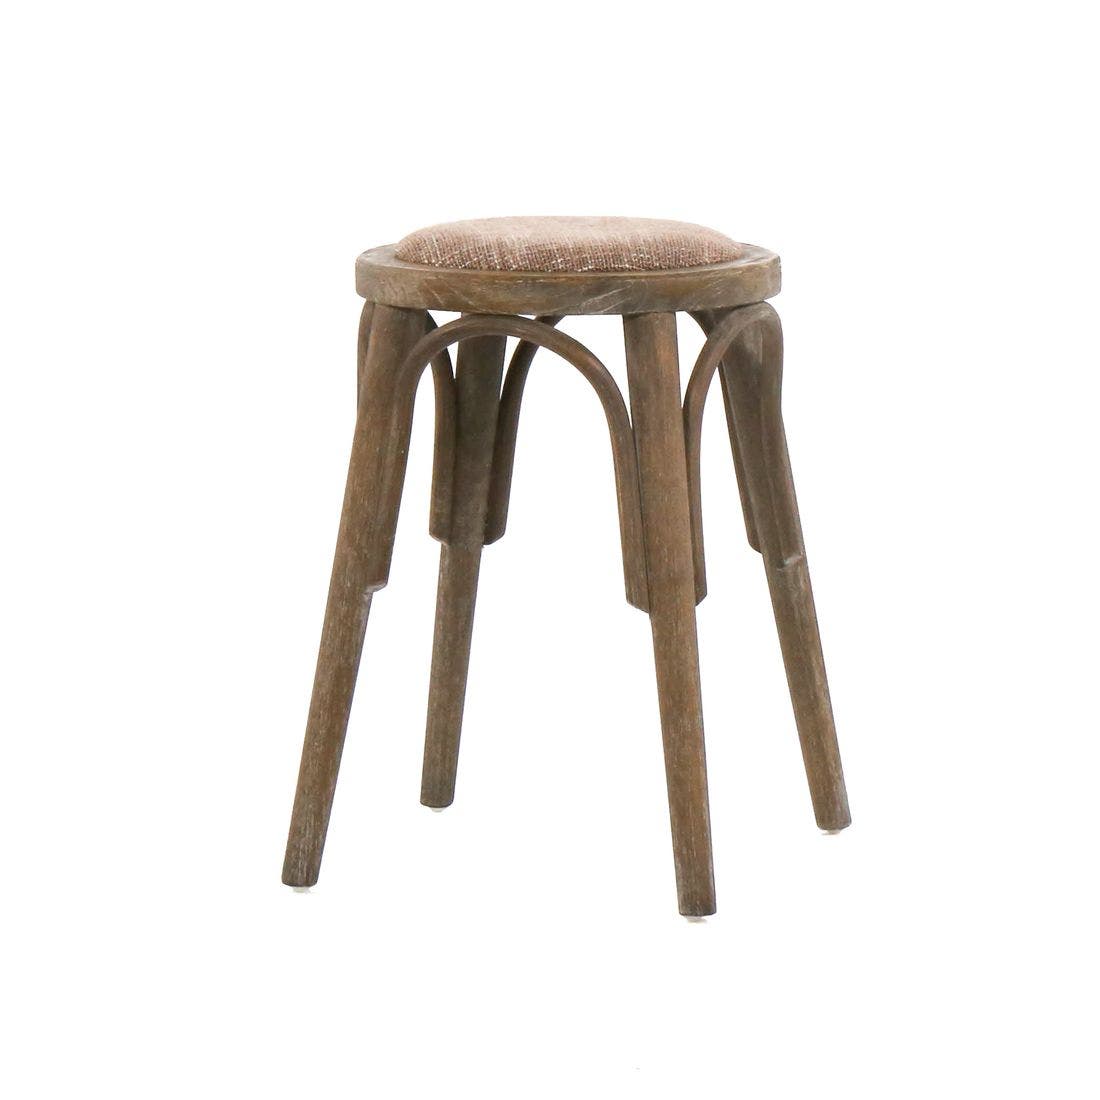 เก้าอี้ทานอาหาร เก้าอี้ไม้เบาะผ้า รุ่น Xin สีสีน้ำตาล-SB Design Square